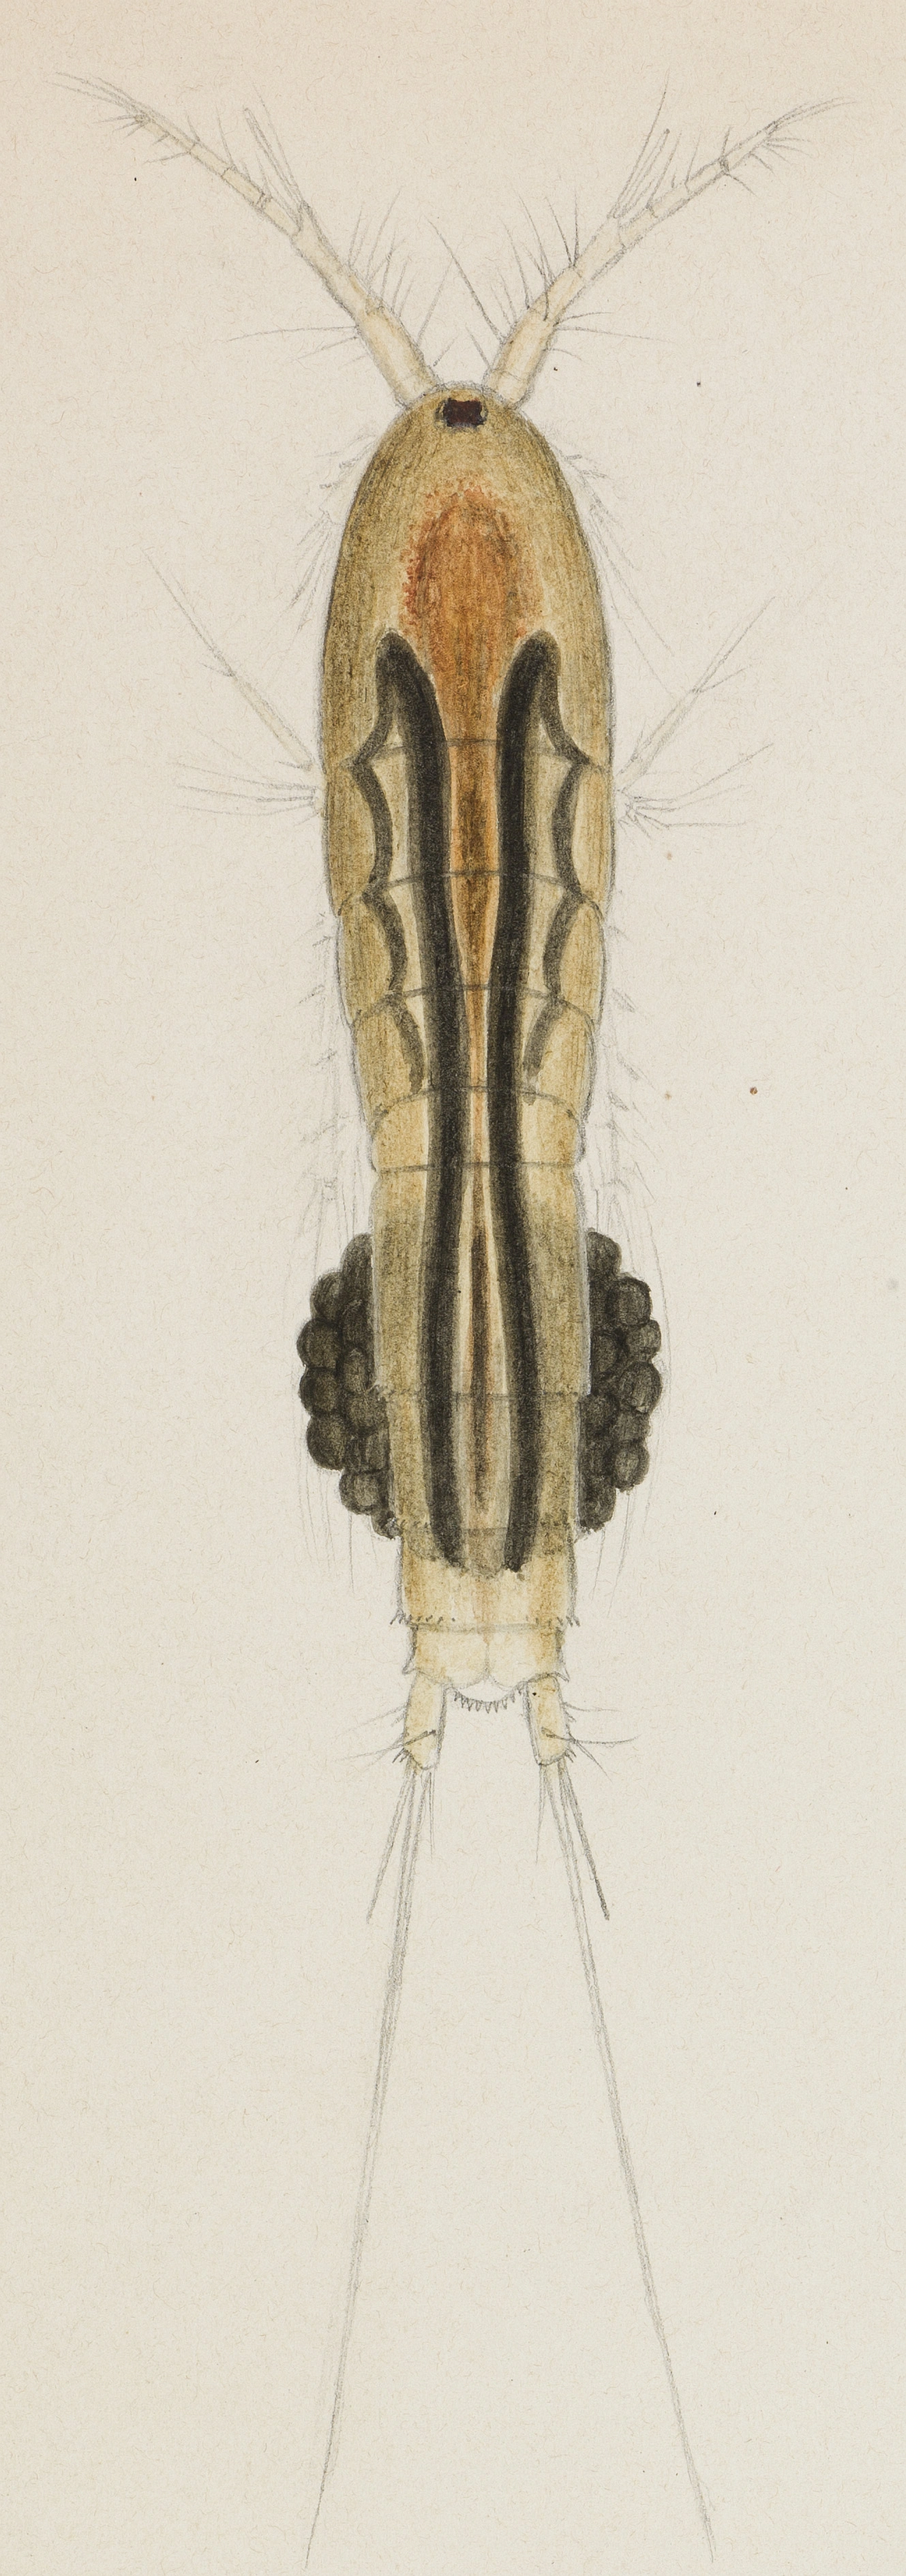 Krepsdyr: Canthocamptus staphylinus.